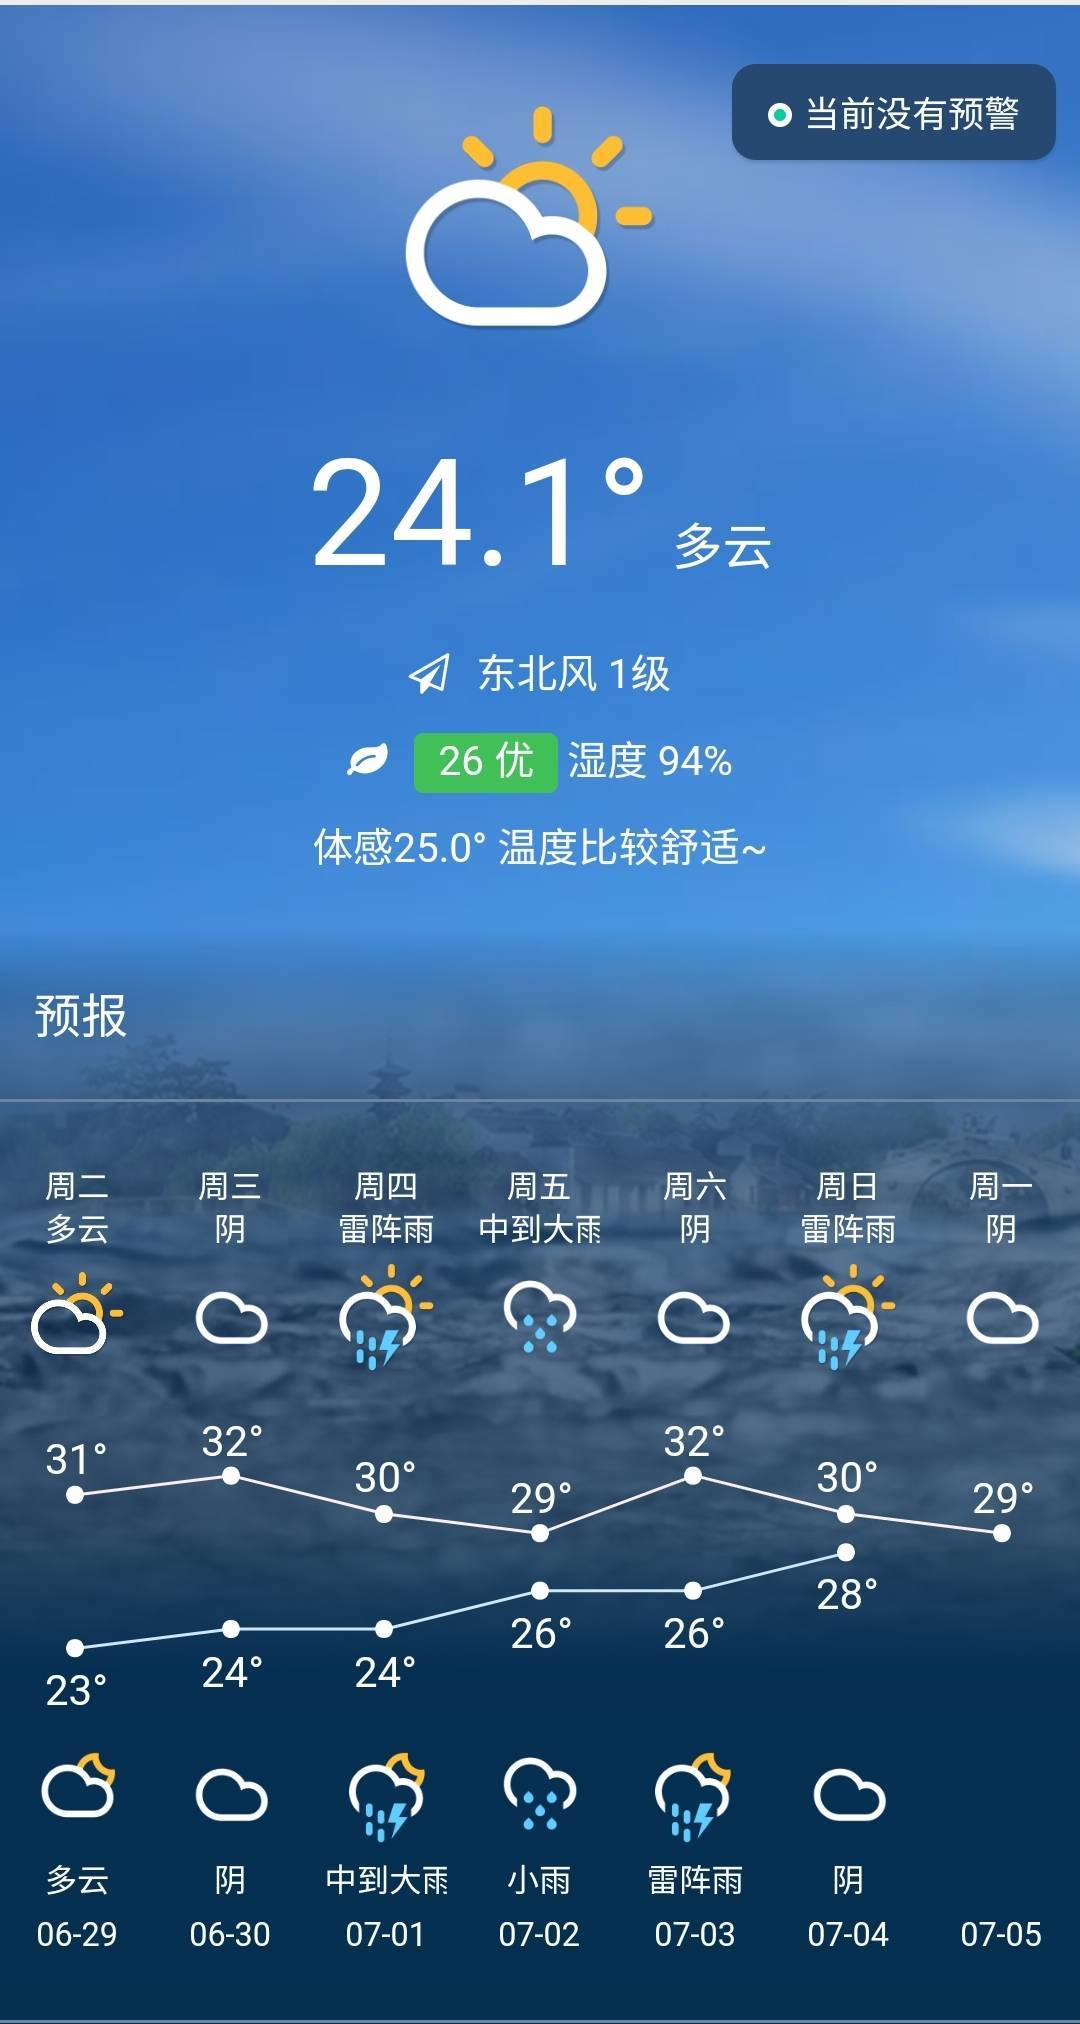 一,天气预报【苏州市气象台2021年06月29日5:20发布】快来看看吧